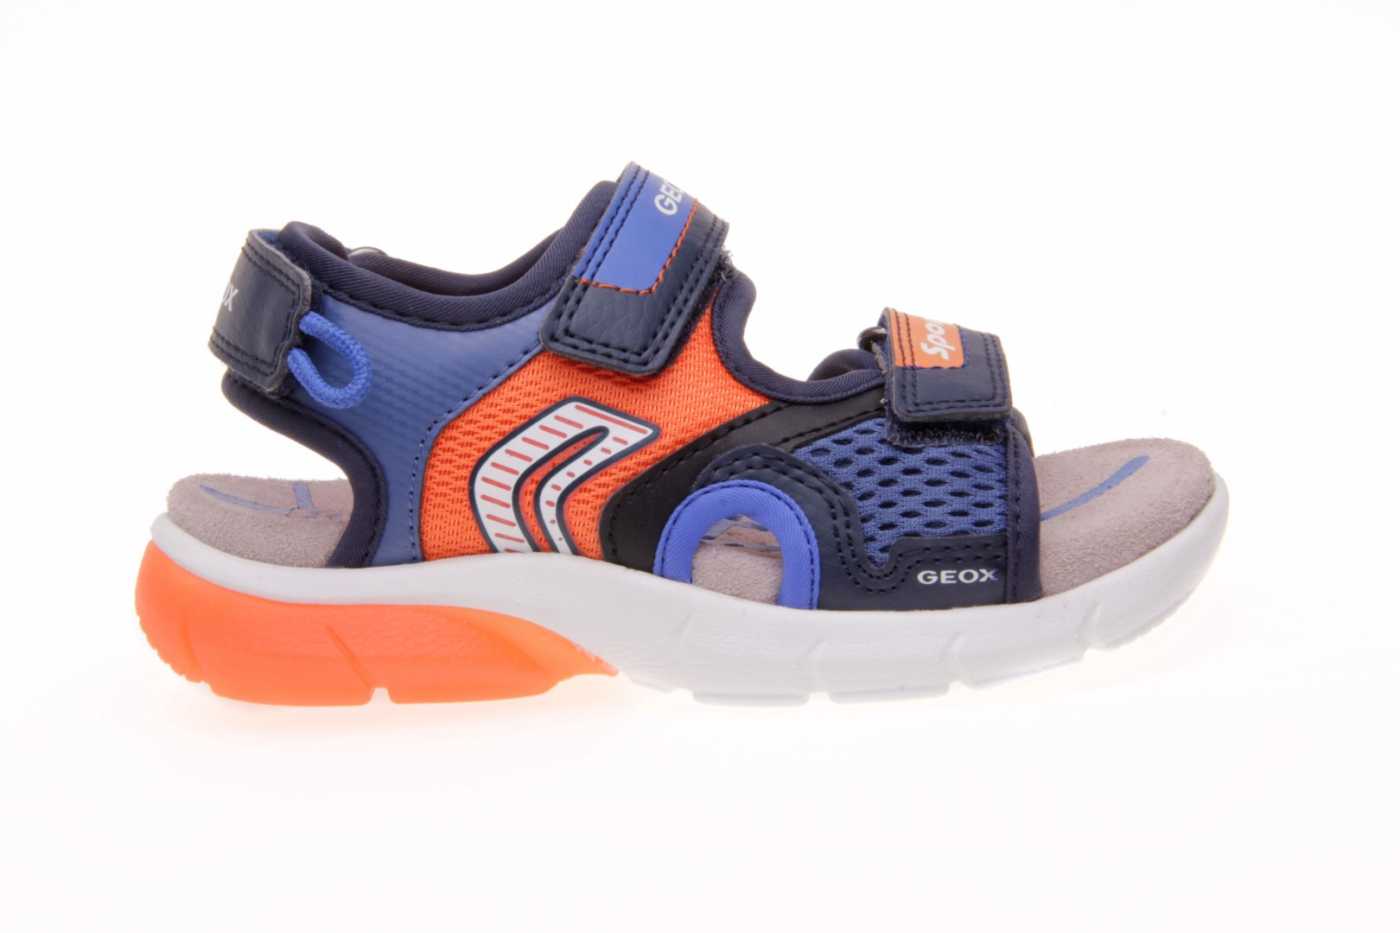 Complejo Reina Tecnología Comprar zapato GEOX para JOVEN NIÑO estilo SANDALIA color AZUL MARINO PIEL